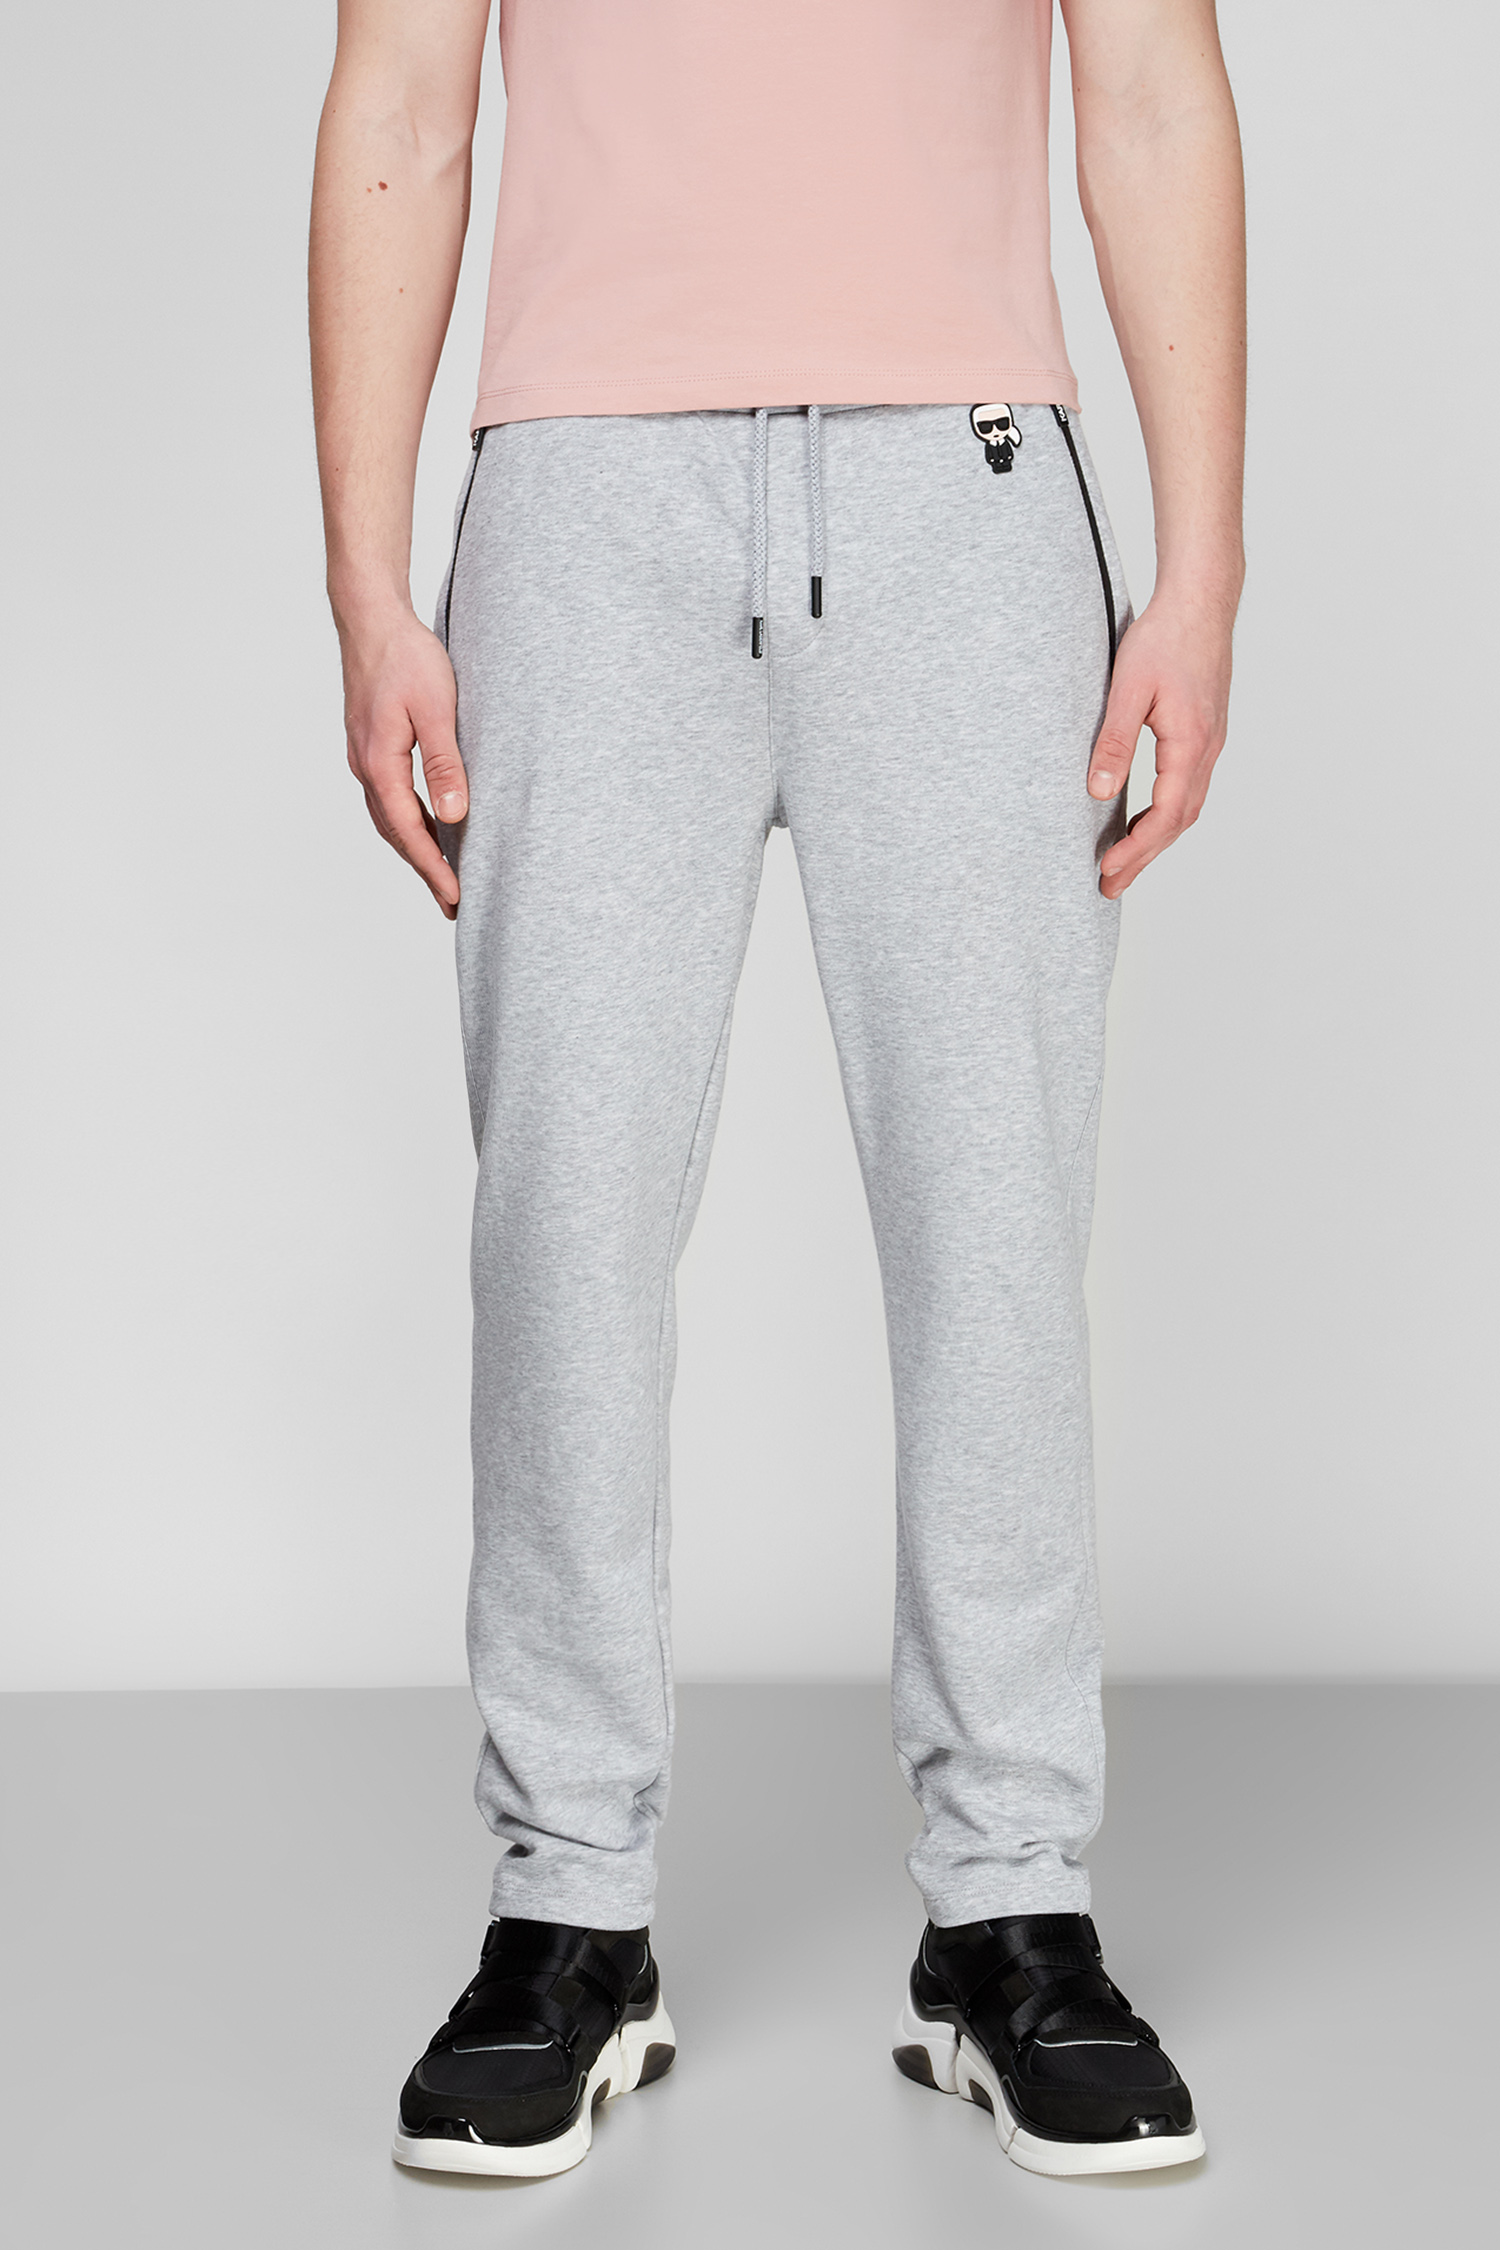 Сірі спортивні штани для хлопців Karl Lagerfeld 511900.705025;941